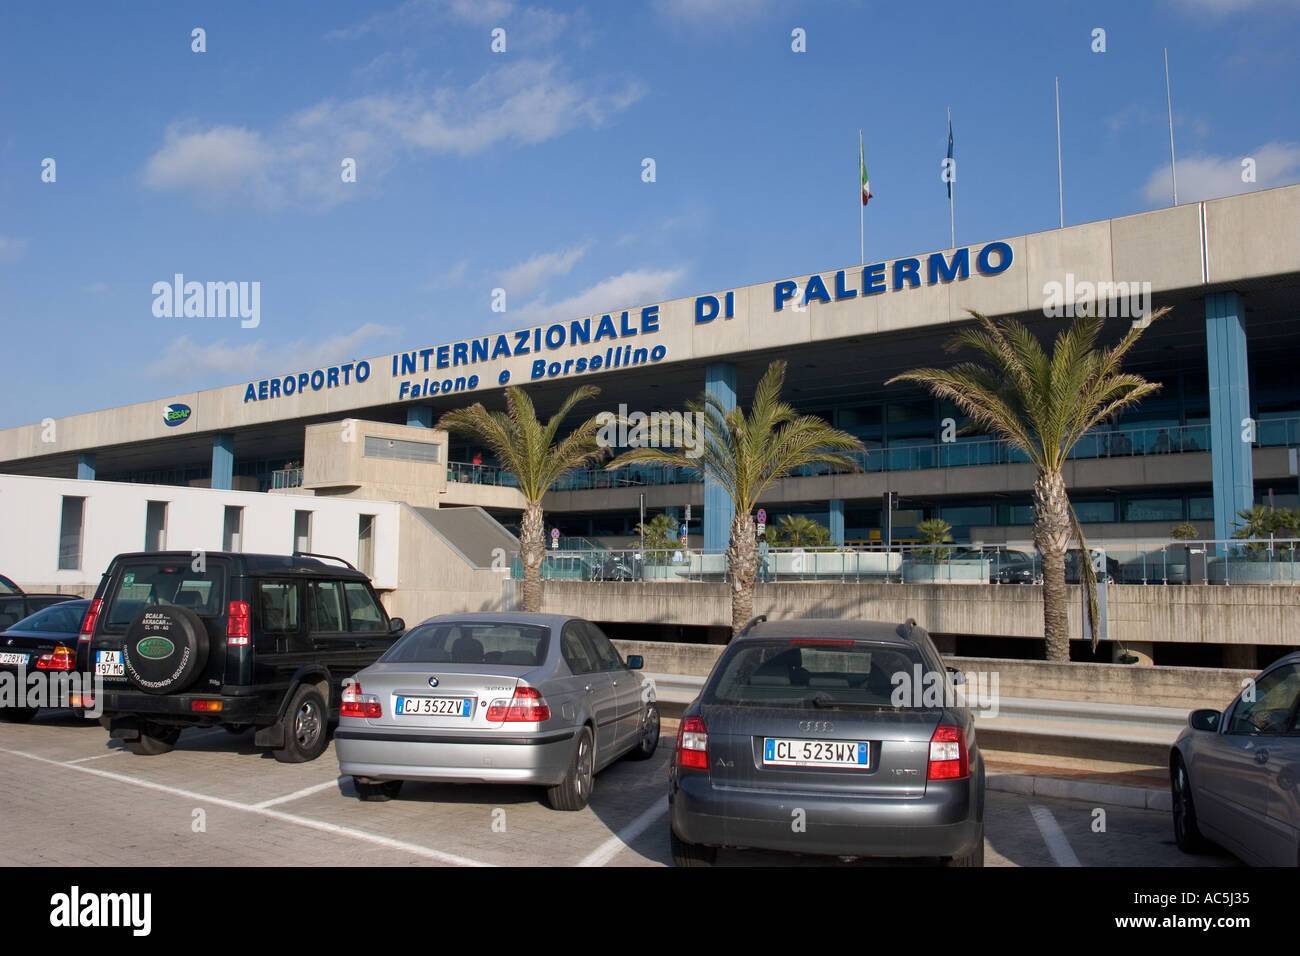 Летим на отдых в италию — международные аэропорты итальянских курортов